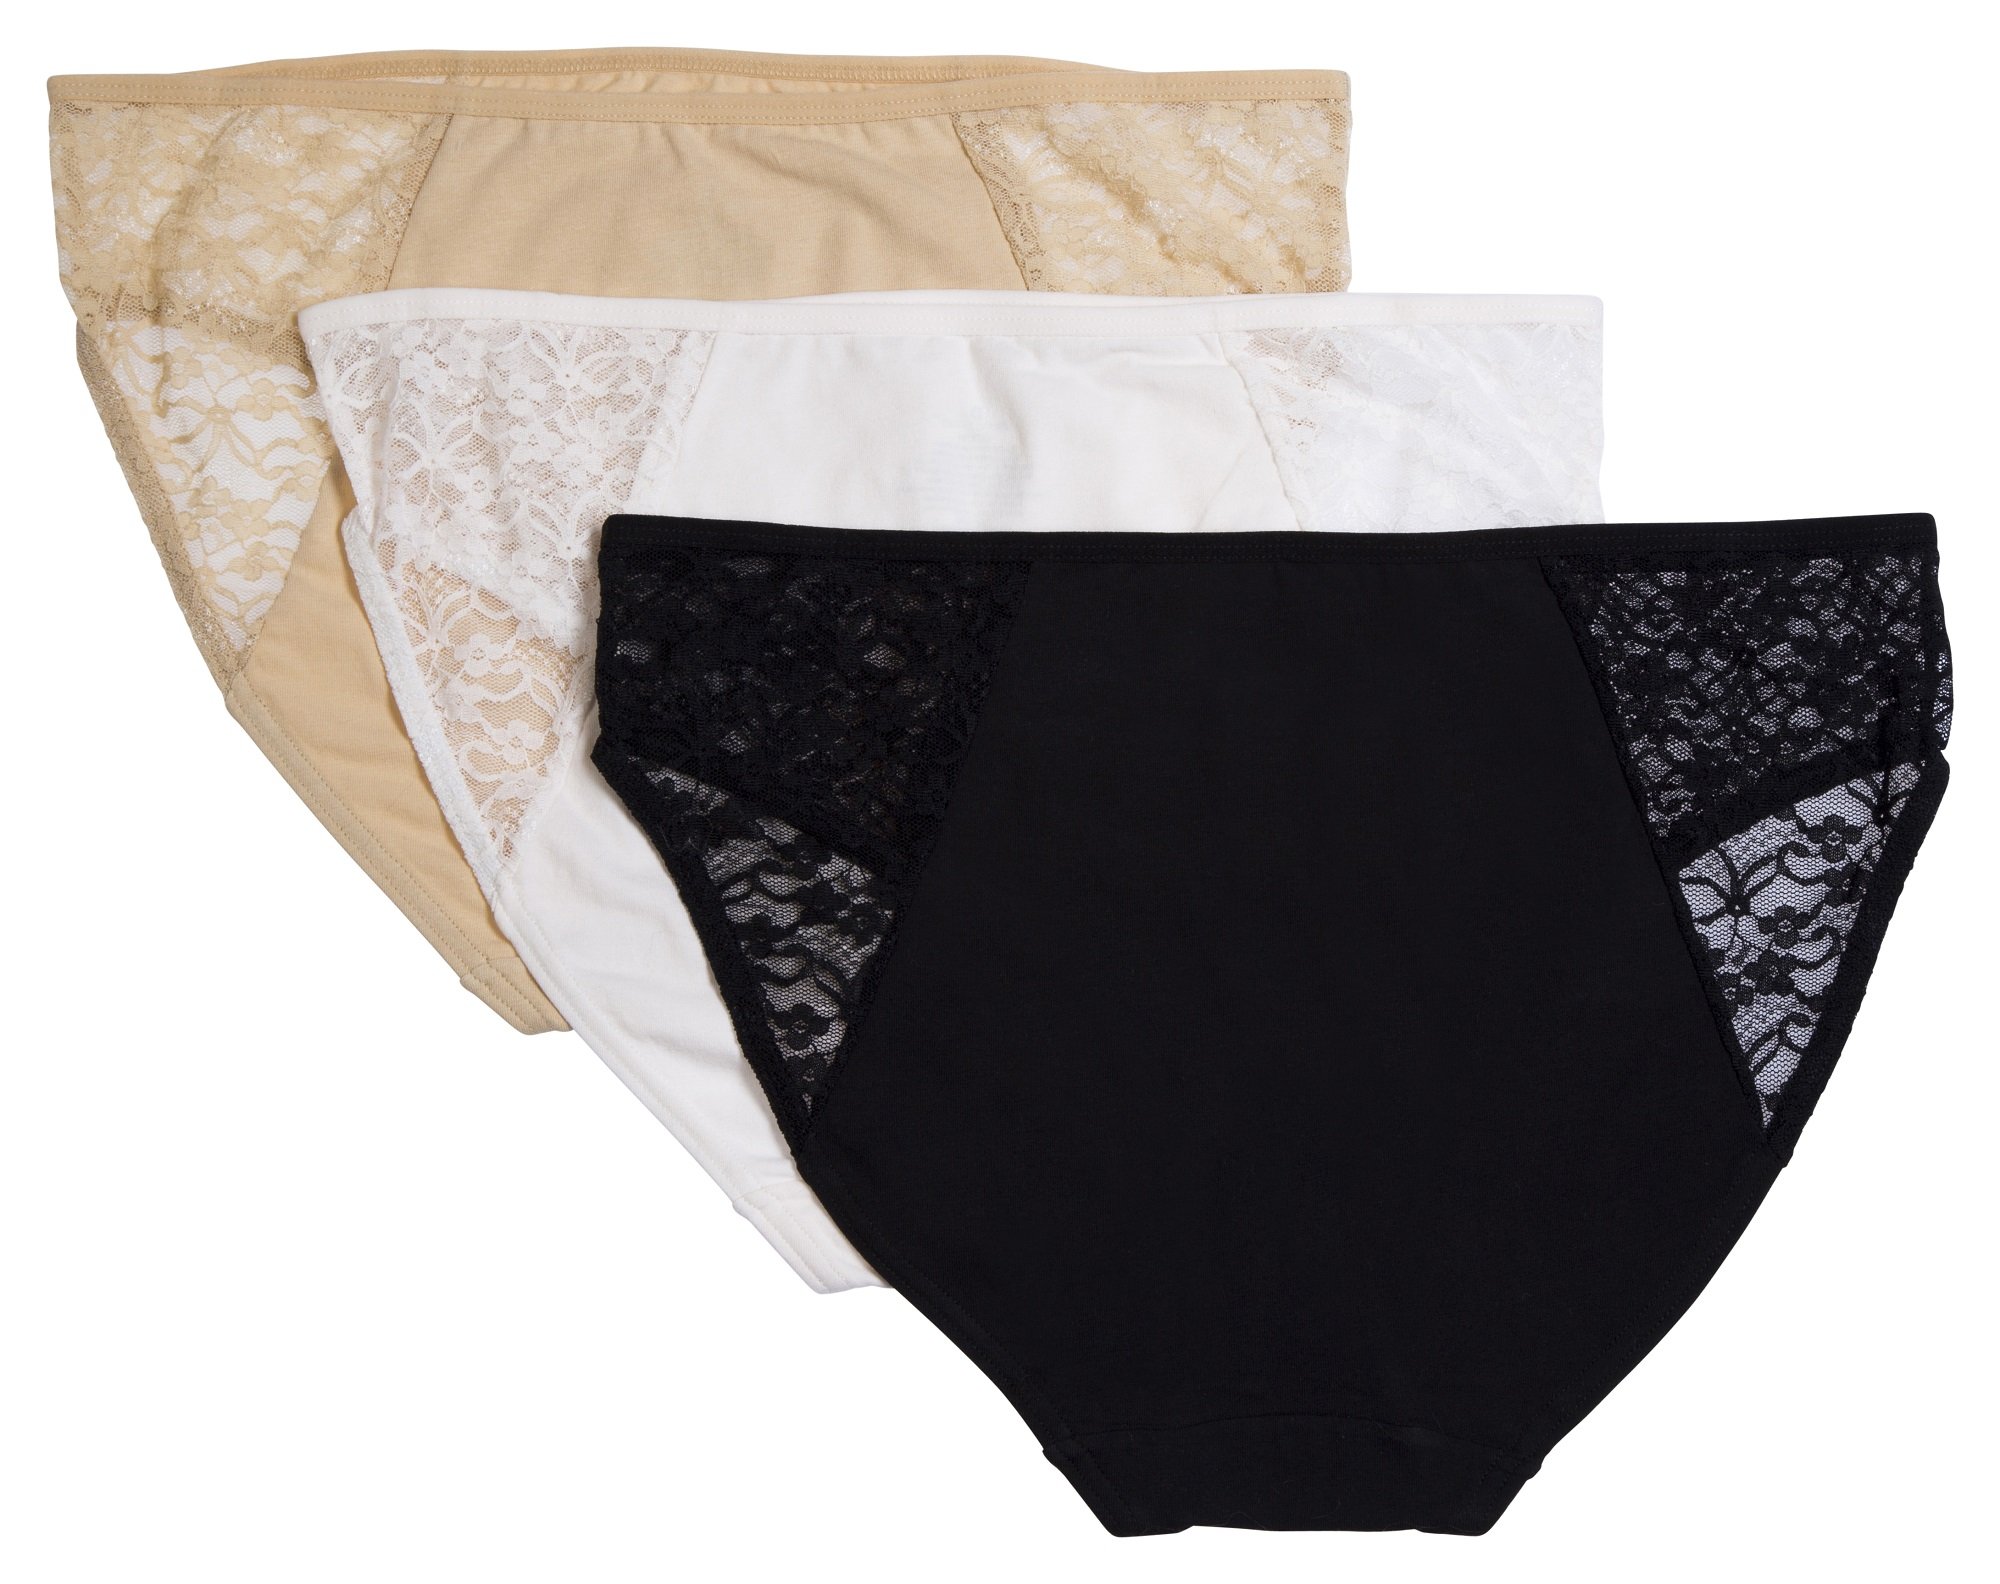 Biancheria Intima Donna Essentials Cotton Stretch Hi Cut Brief Panty Mutande Bikini E Slip